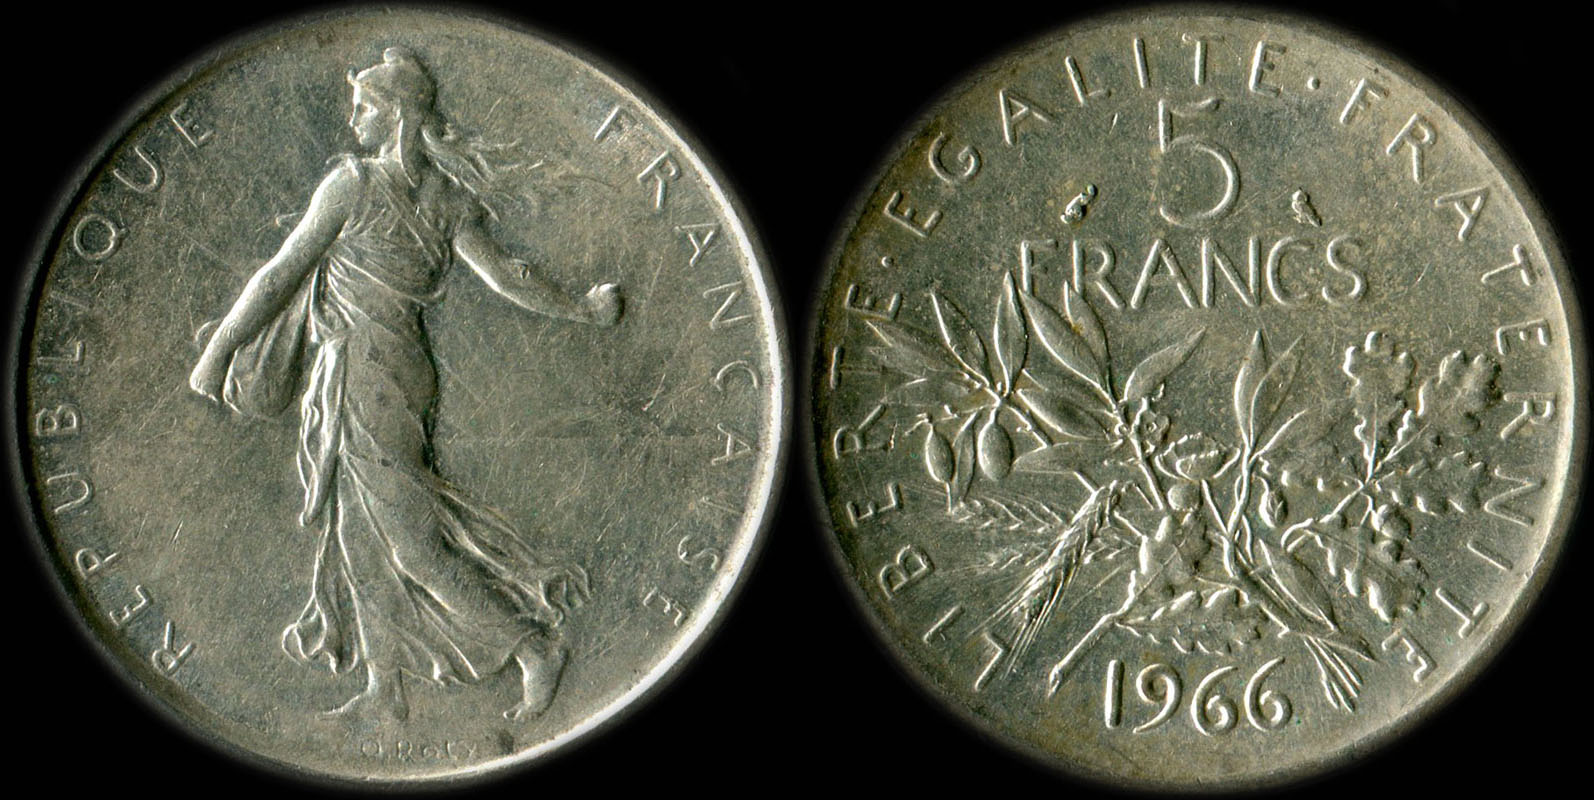 Pice de 5 francs 1966 Semeuse argent